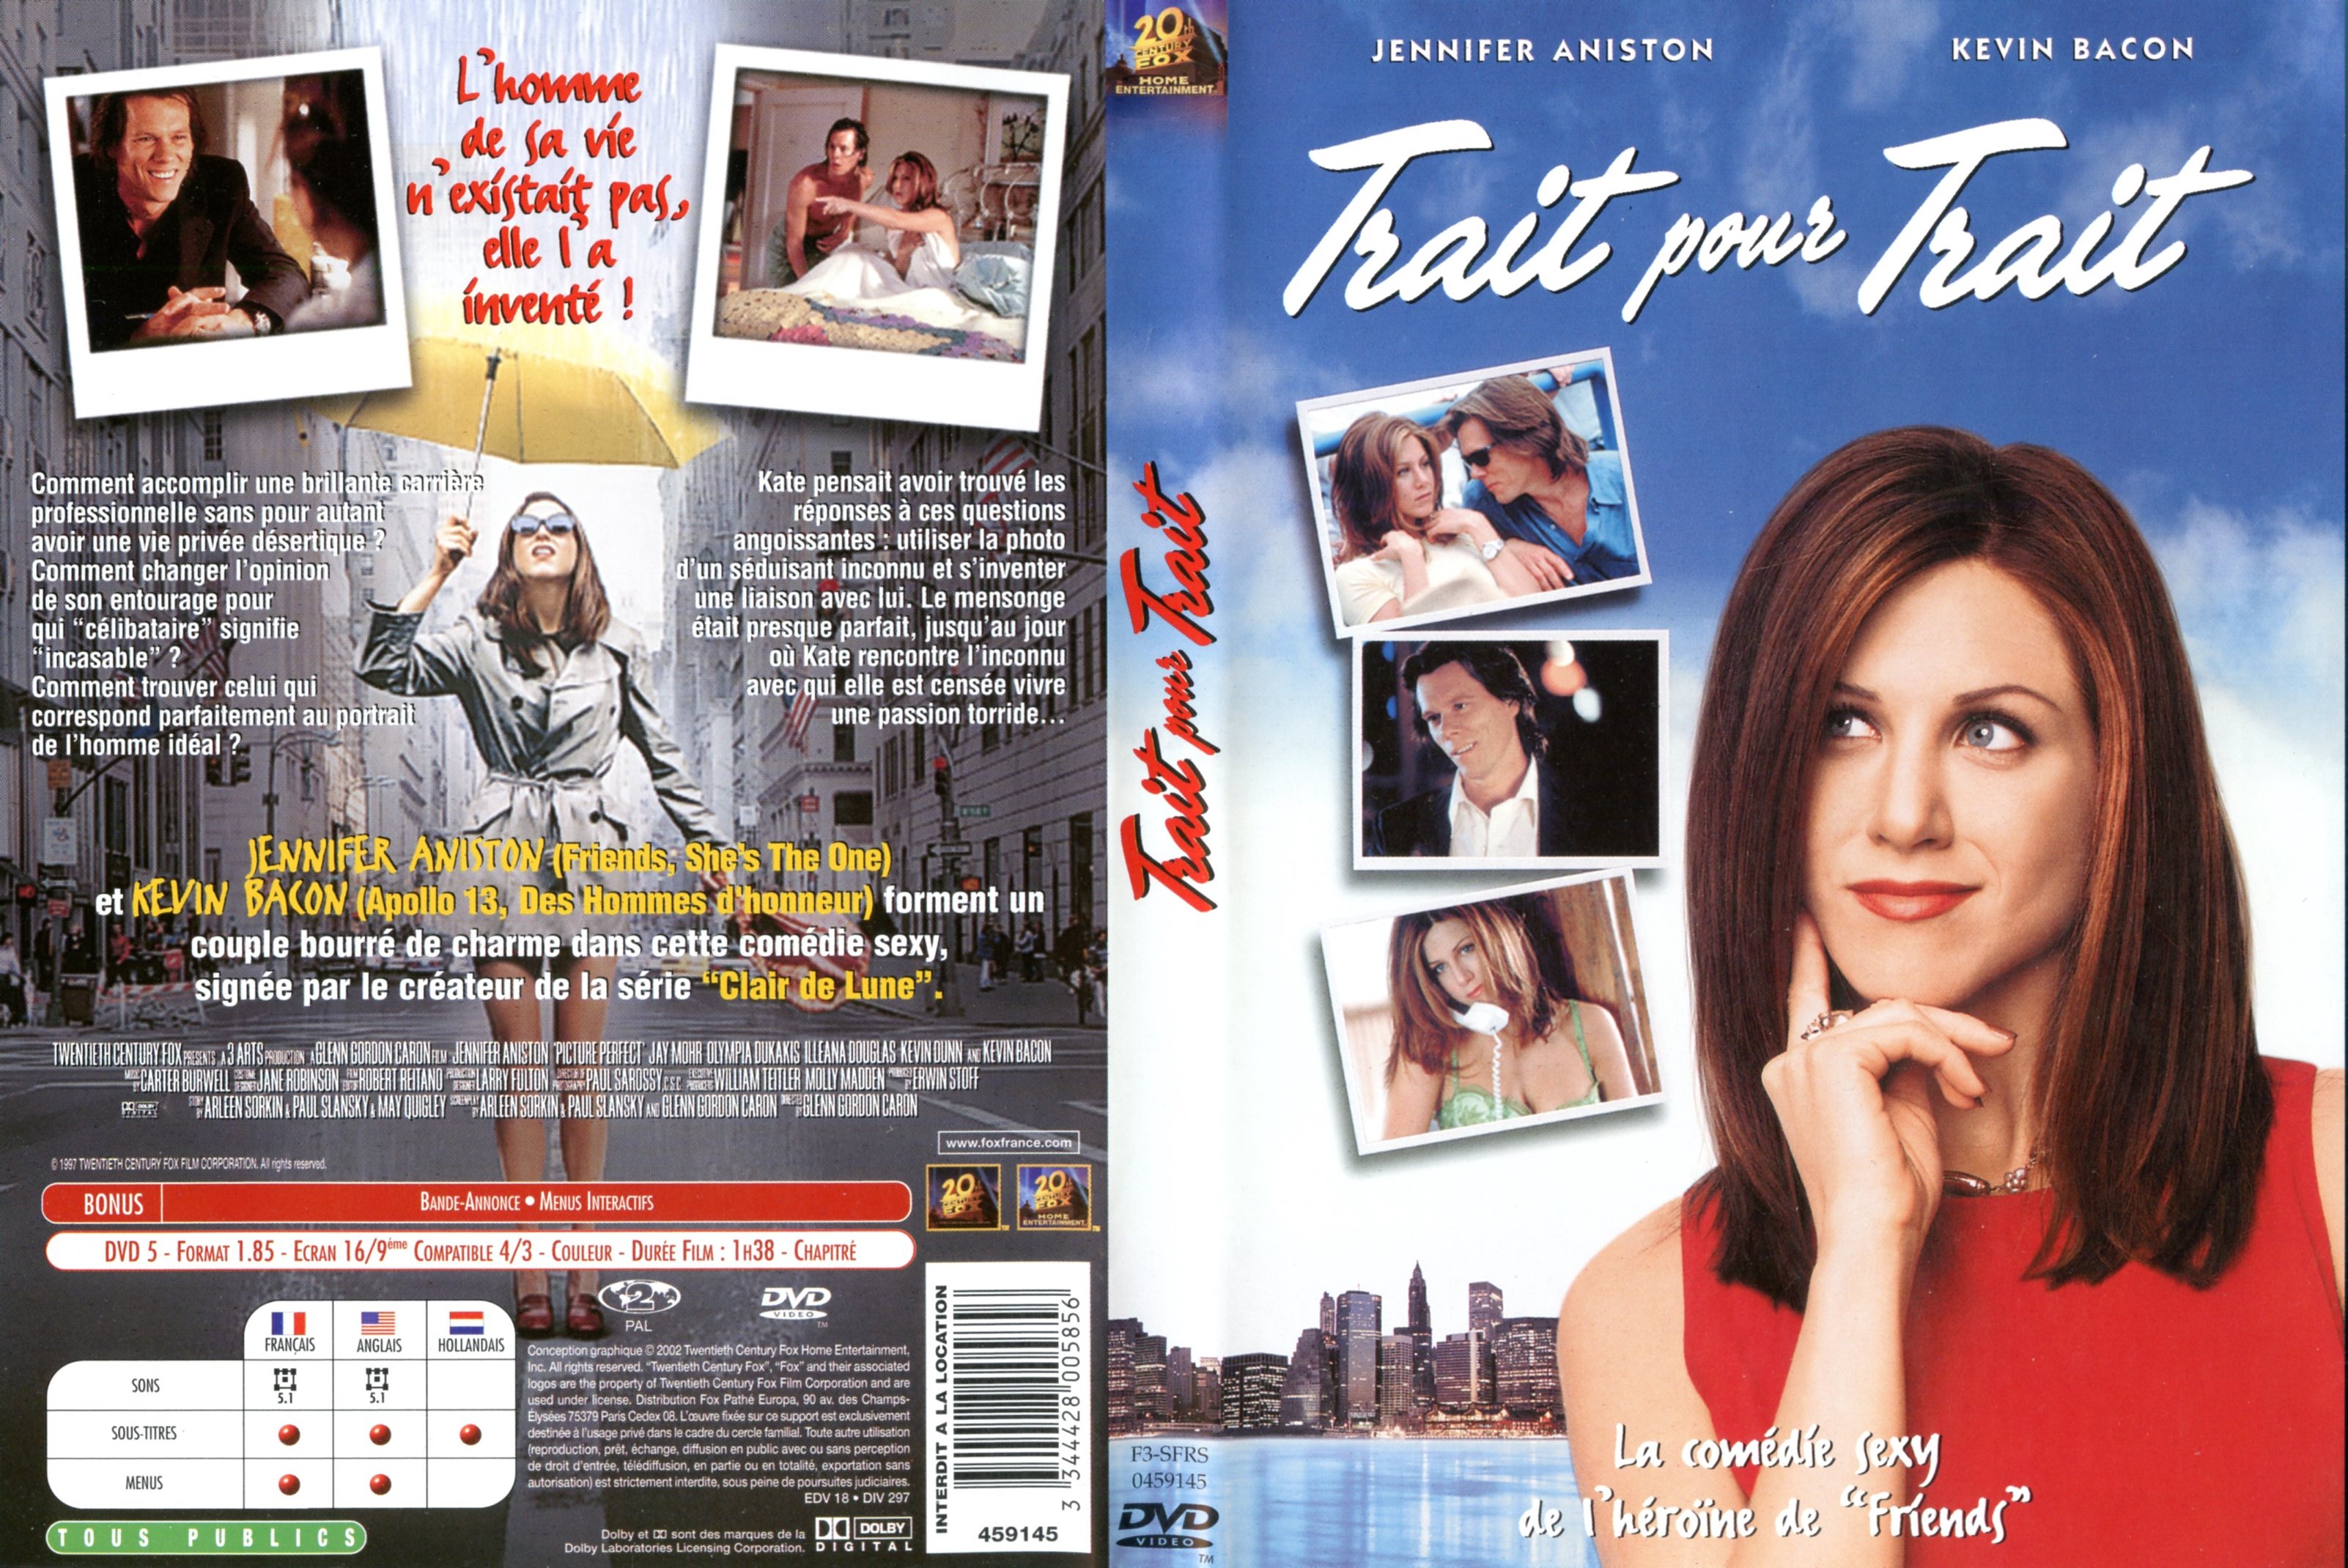 Jaquette DVD Trait pour trait v2